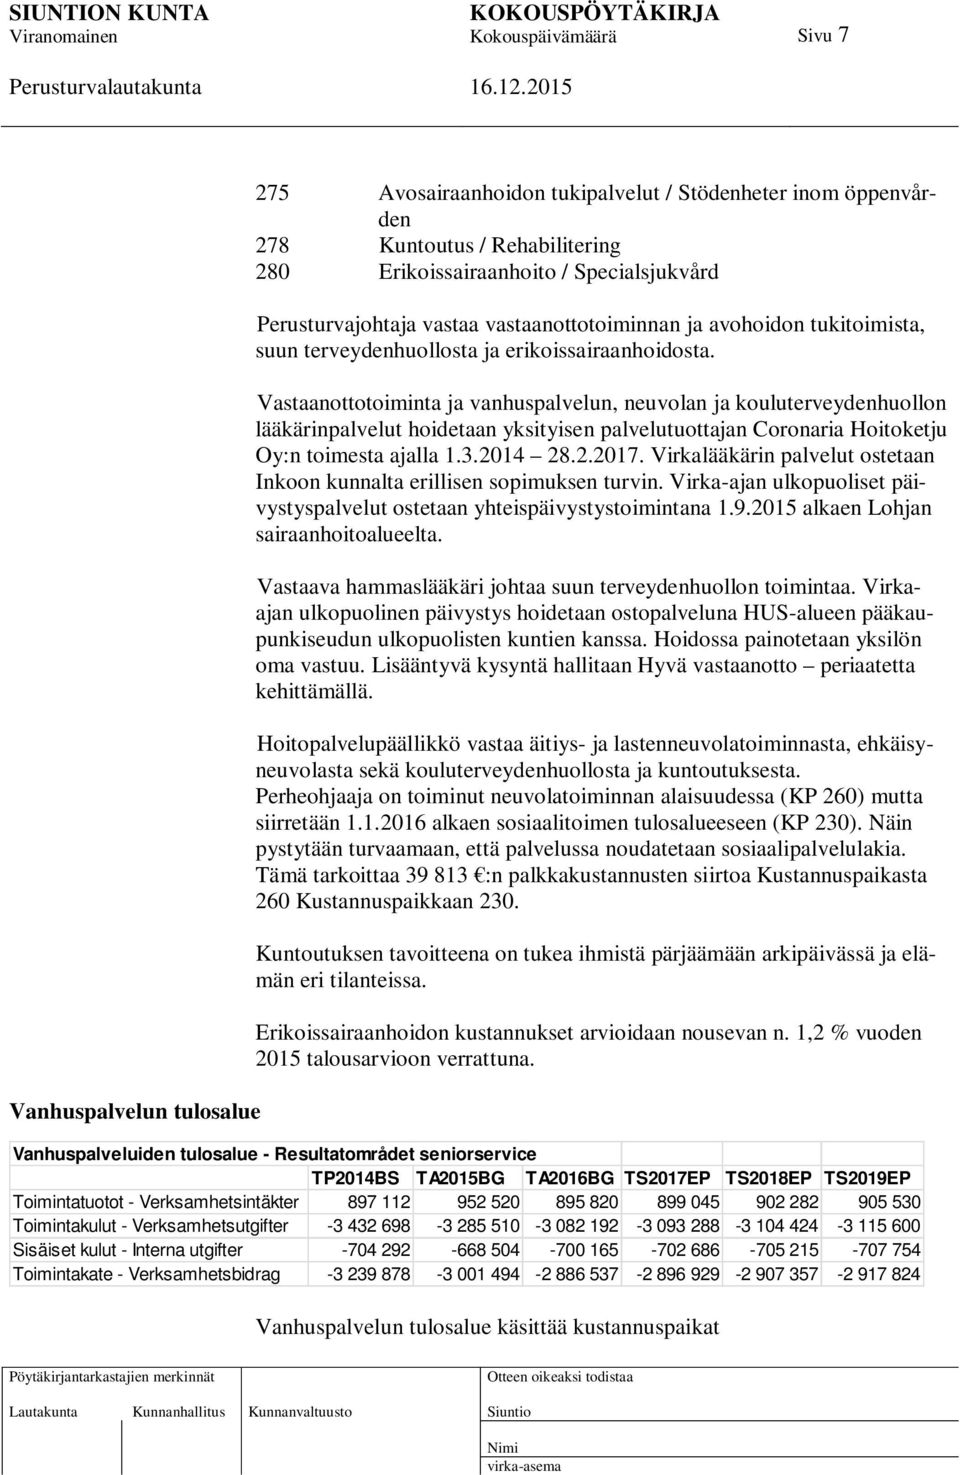 Vastaanottotoiminta ja vanhuspalvelun, neuvolan ja kouluterveydenhuollon lääkärinpalvelut hoidetaan yksityisen palvelutuottajan Coronaria Hoitoketju Oy:n toimesta ajalla 1.3.2014 28.2.2017.